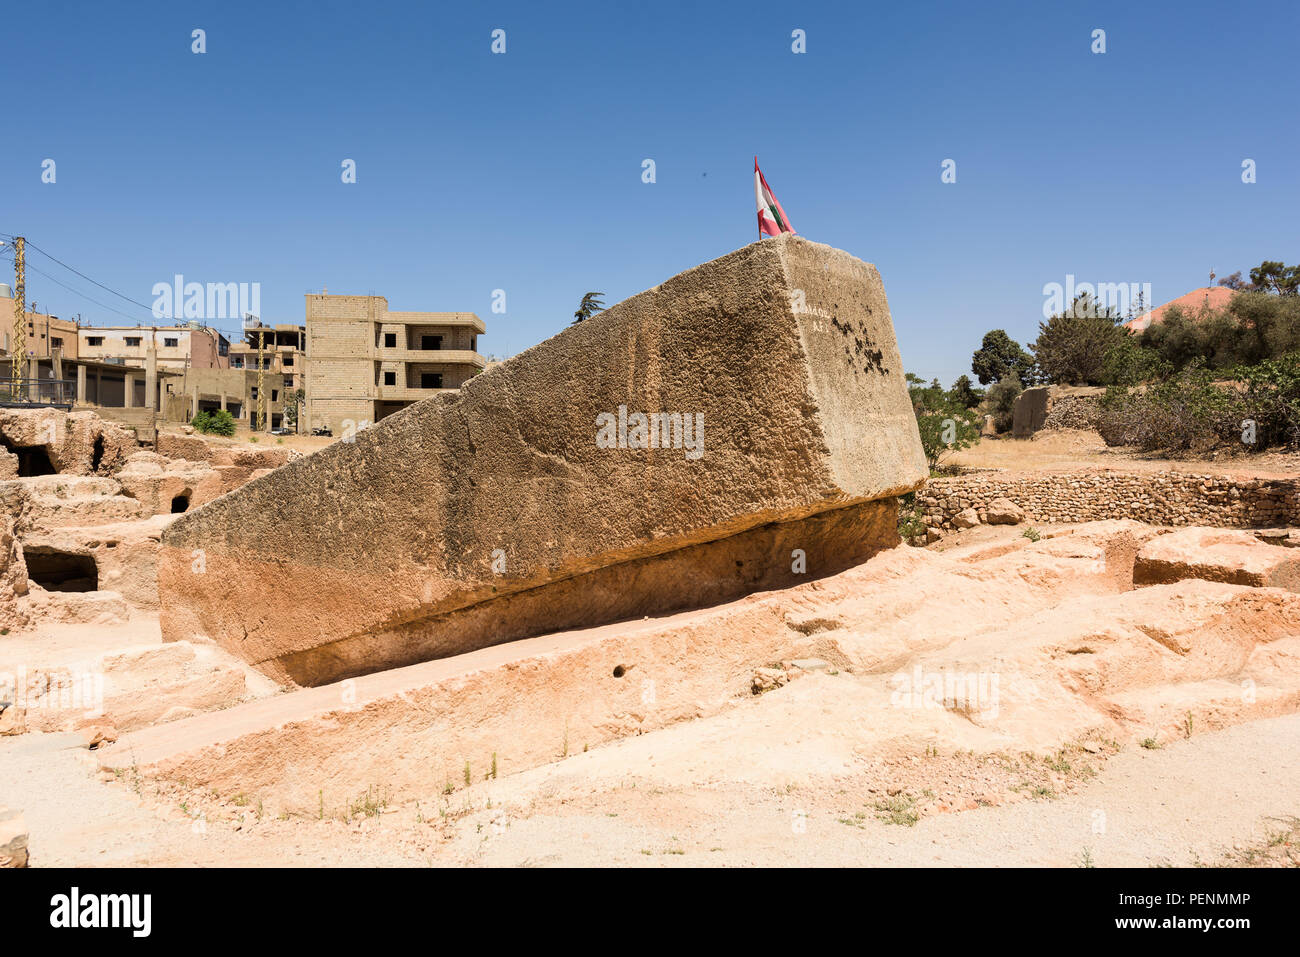 La piedra de la embarazada es la piedra tallada más grande del mundo y establece en su cantera inconclusa, cerca del complejo de templos romanos de Baalbek, en el Líbano. Foto de stock